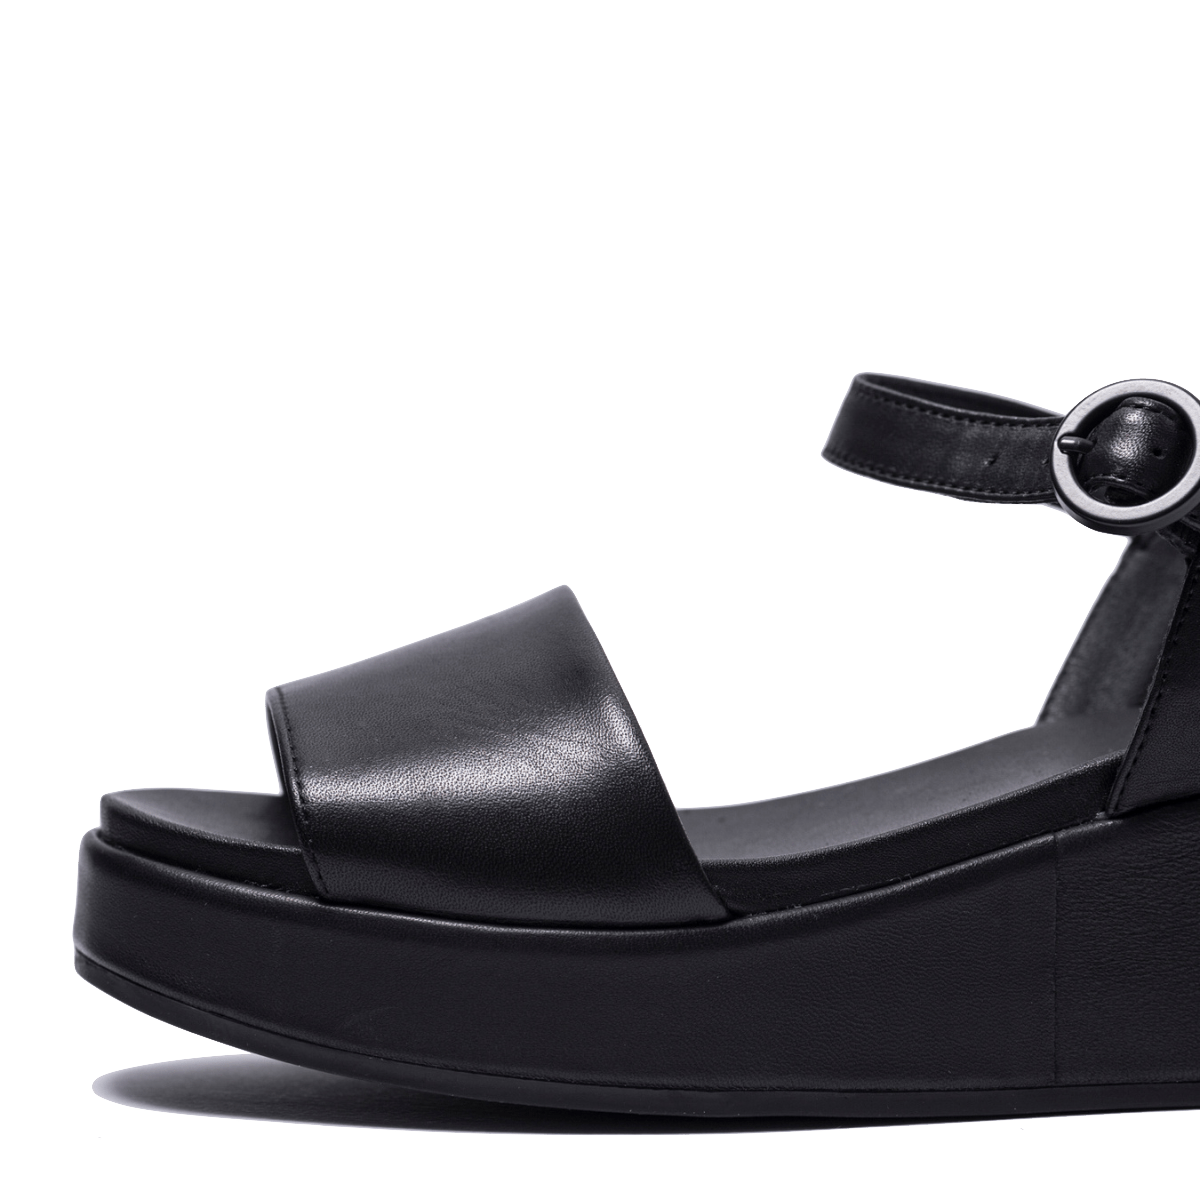 Sandalo Camper Misia Pelle Black - CAMPER - Calzature Savorè